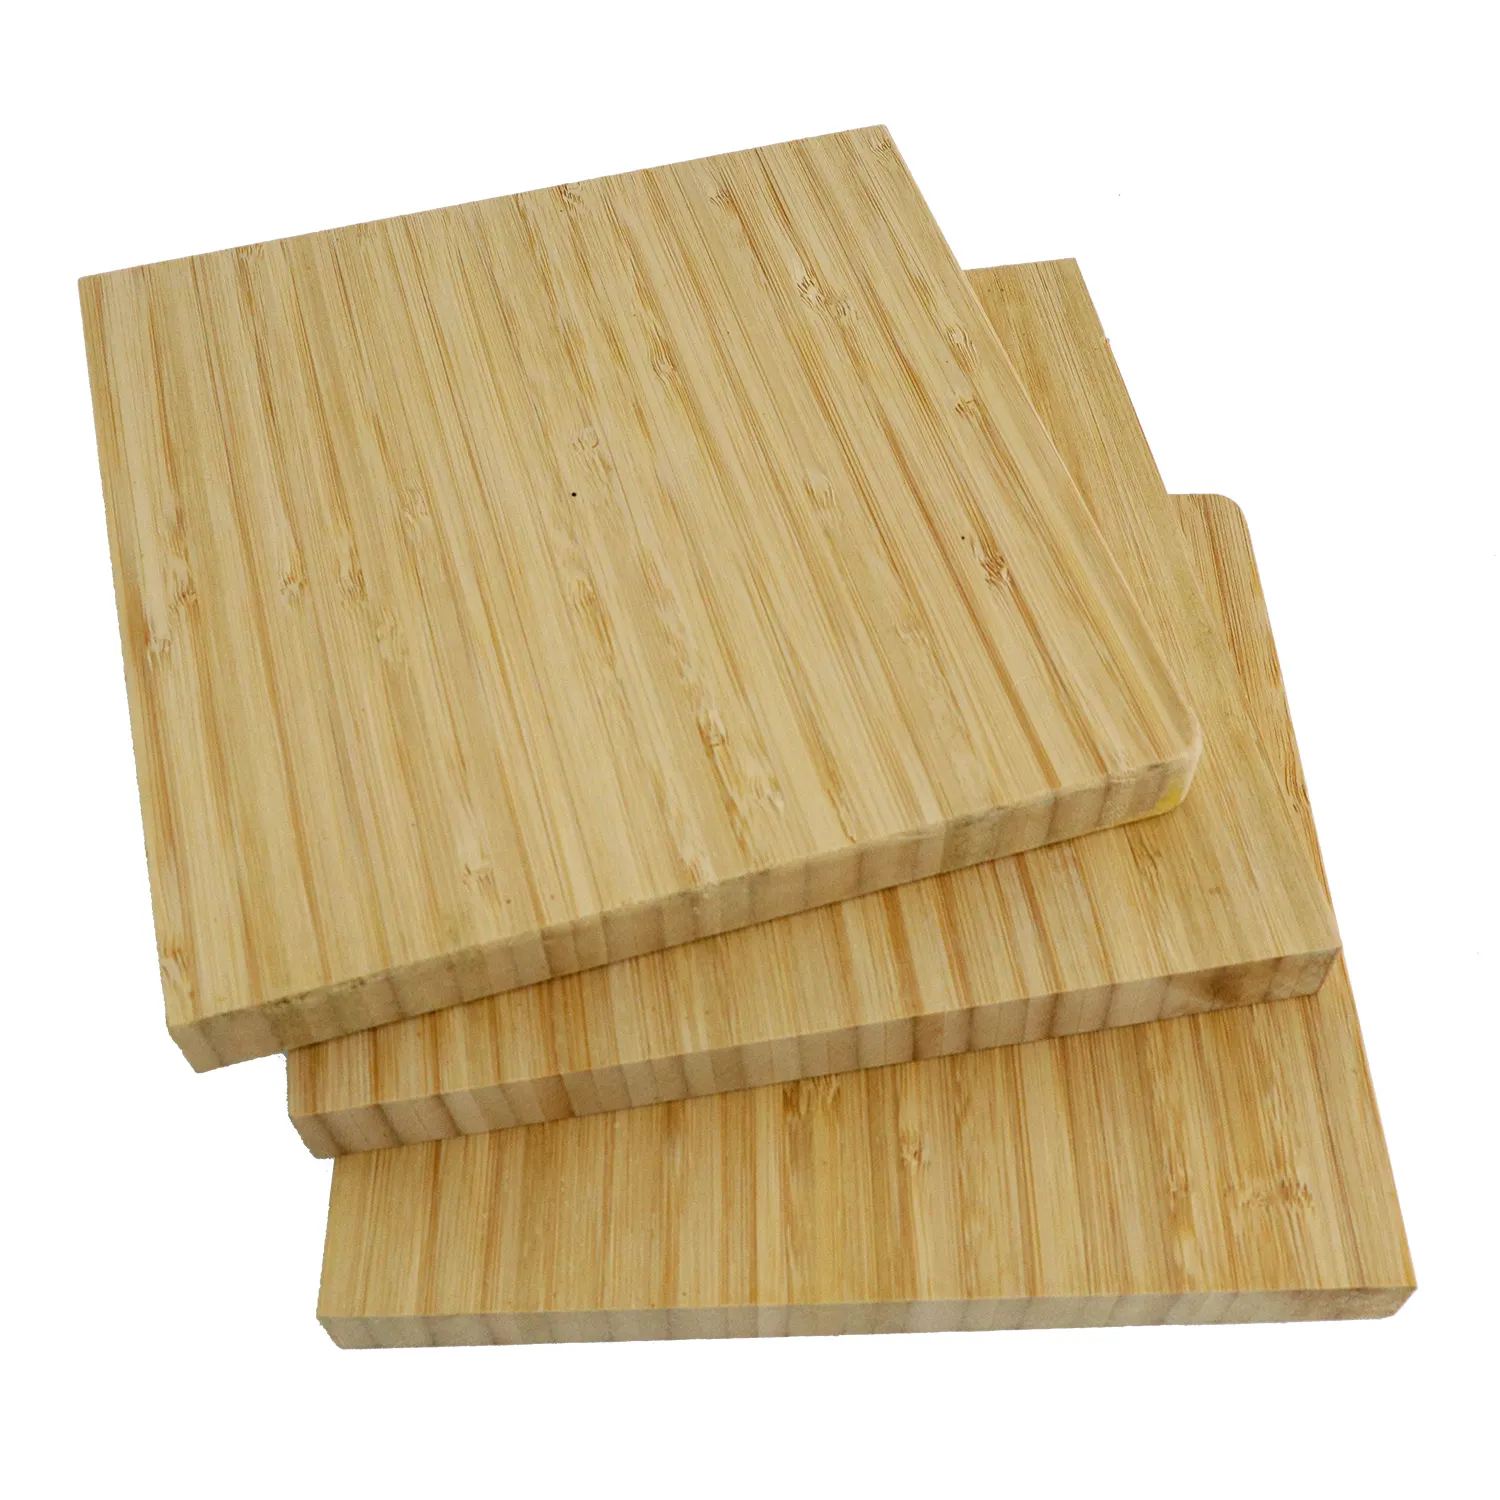 Factory custom bamboo wooden board natural bamboo panels bamboo plywood